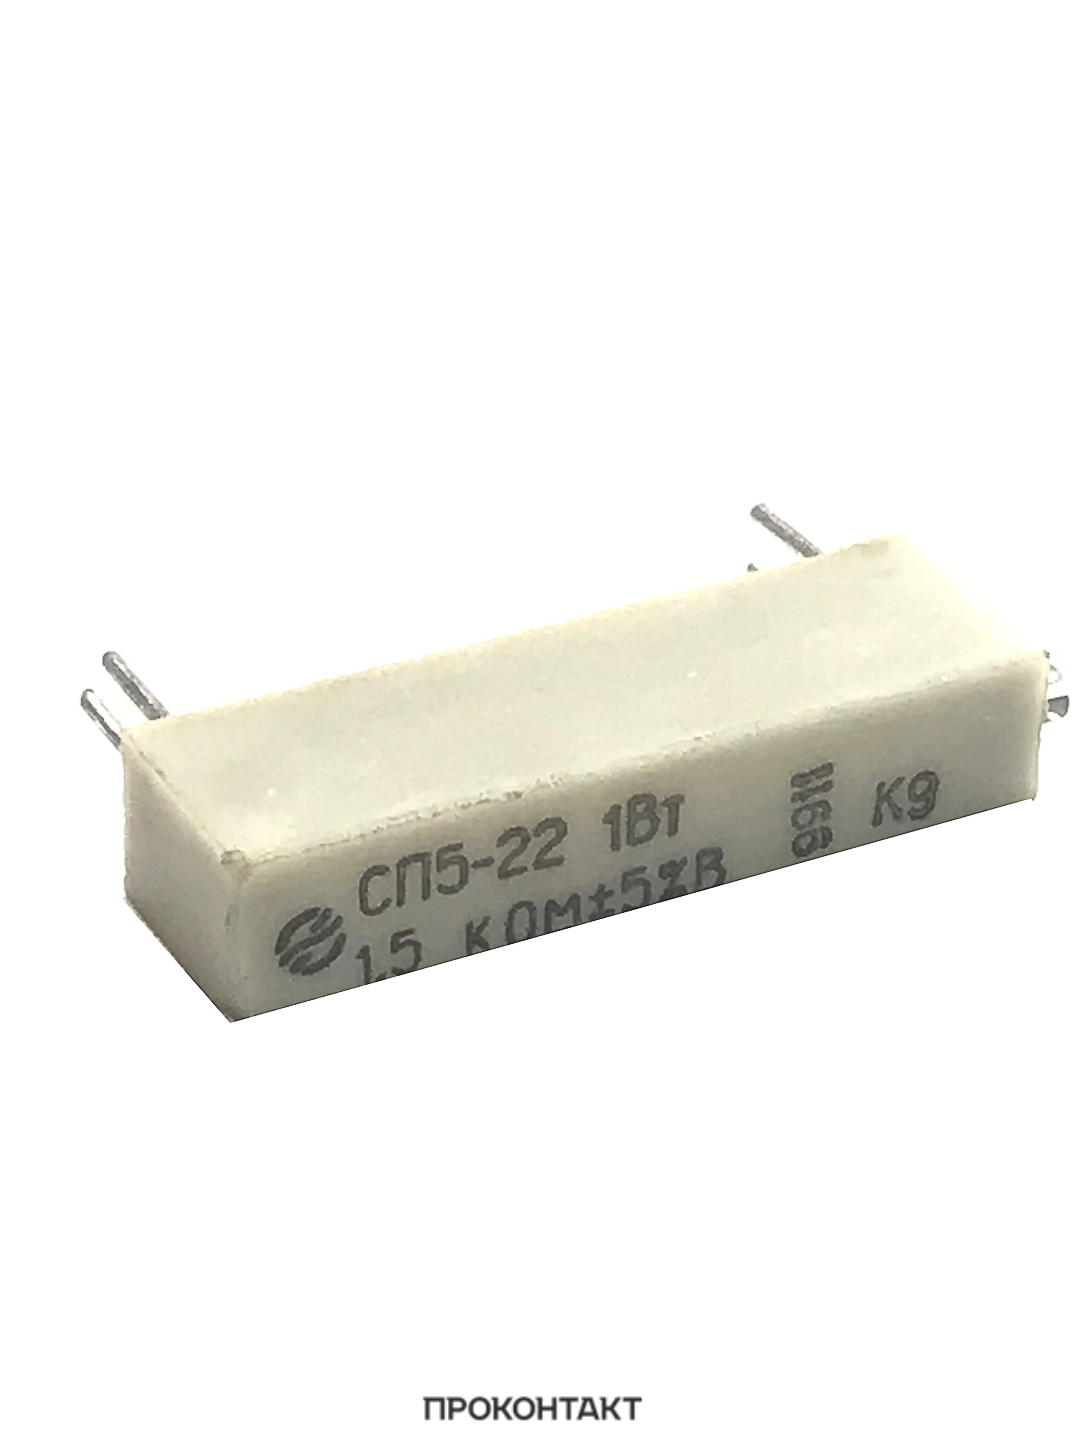 Купить Резистор подстроечный СП5-22 1.5 Ком +-5% в Челябинске